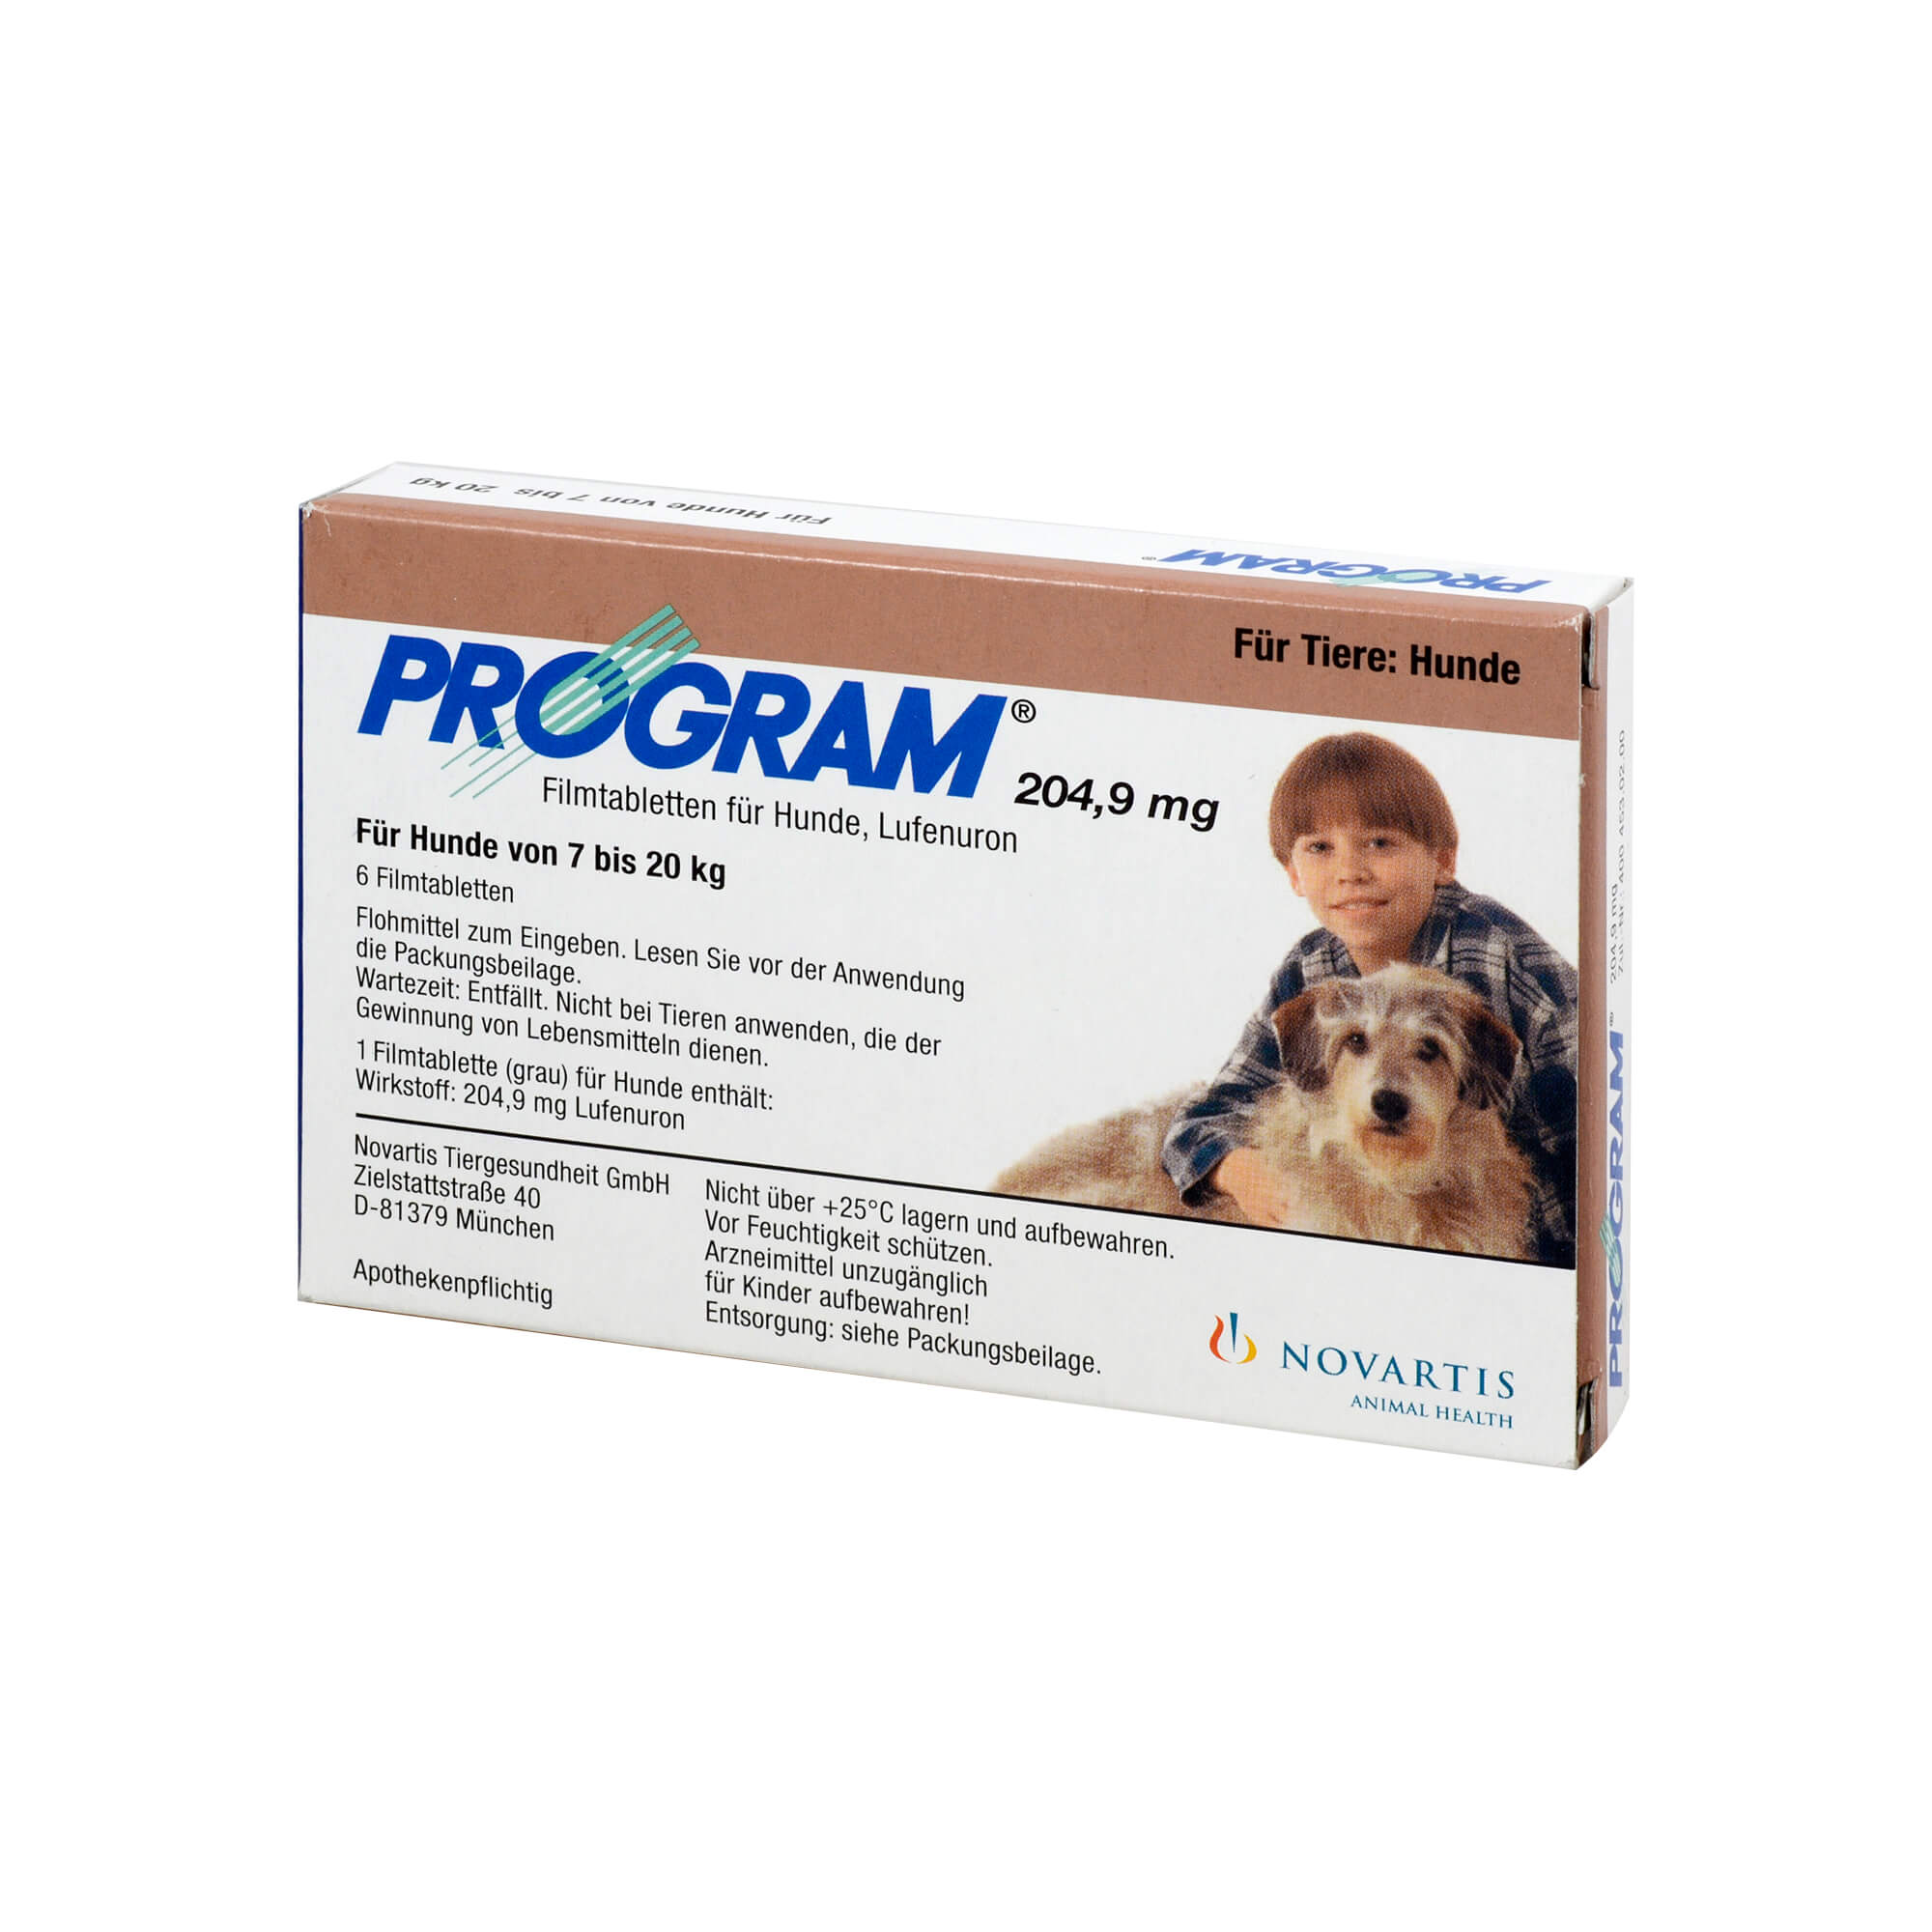 Zur Therapie und Prophylaxe von Flohinfestationen bei Hunden. Program 204,9 mg ist wirksam gegen die unreifen Entwicklungsstadien (präadulte Stadien) des Hundeflohs Ctenocephalides canis und des Kat